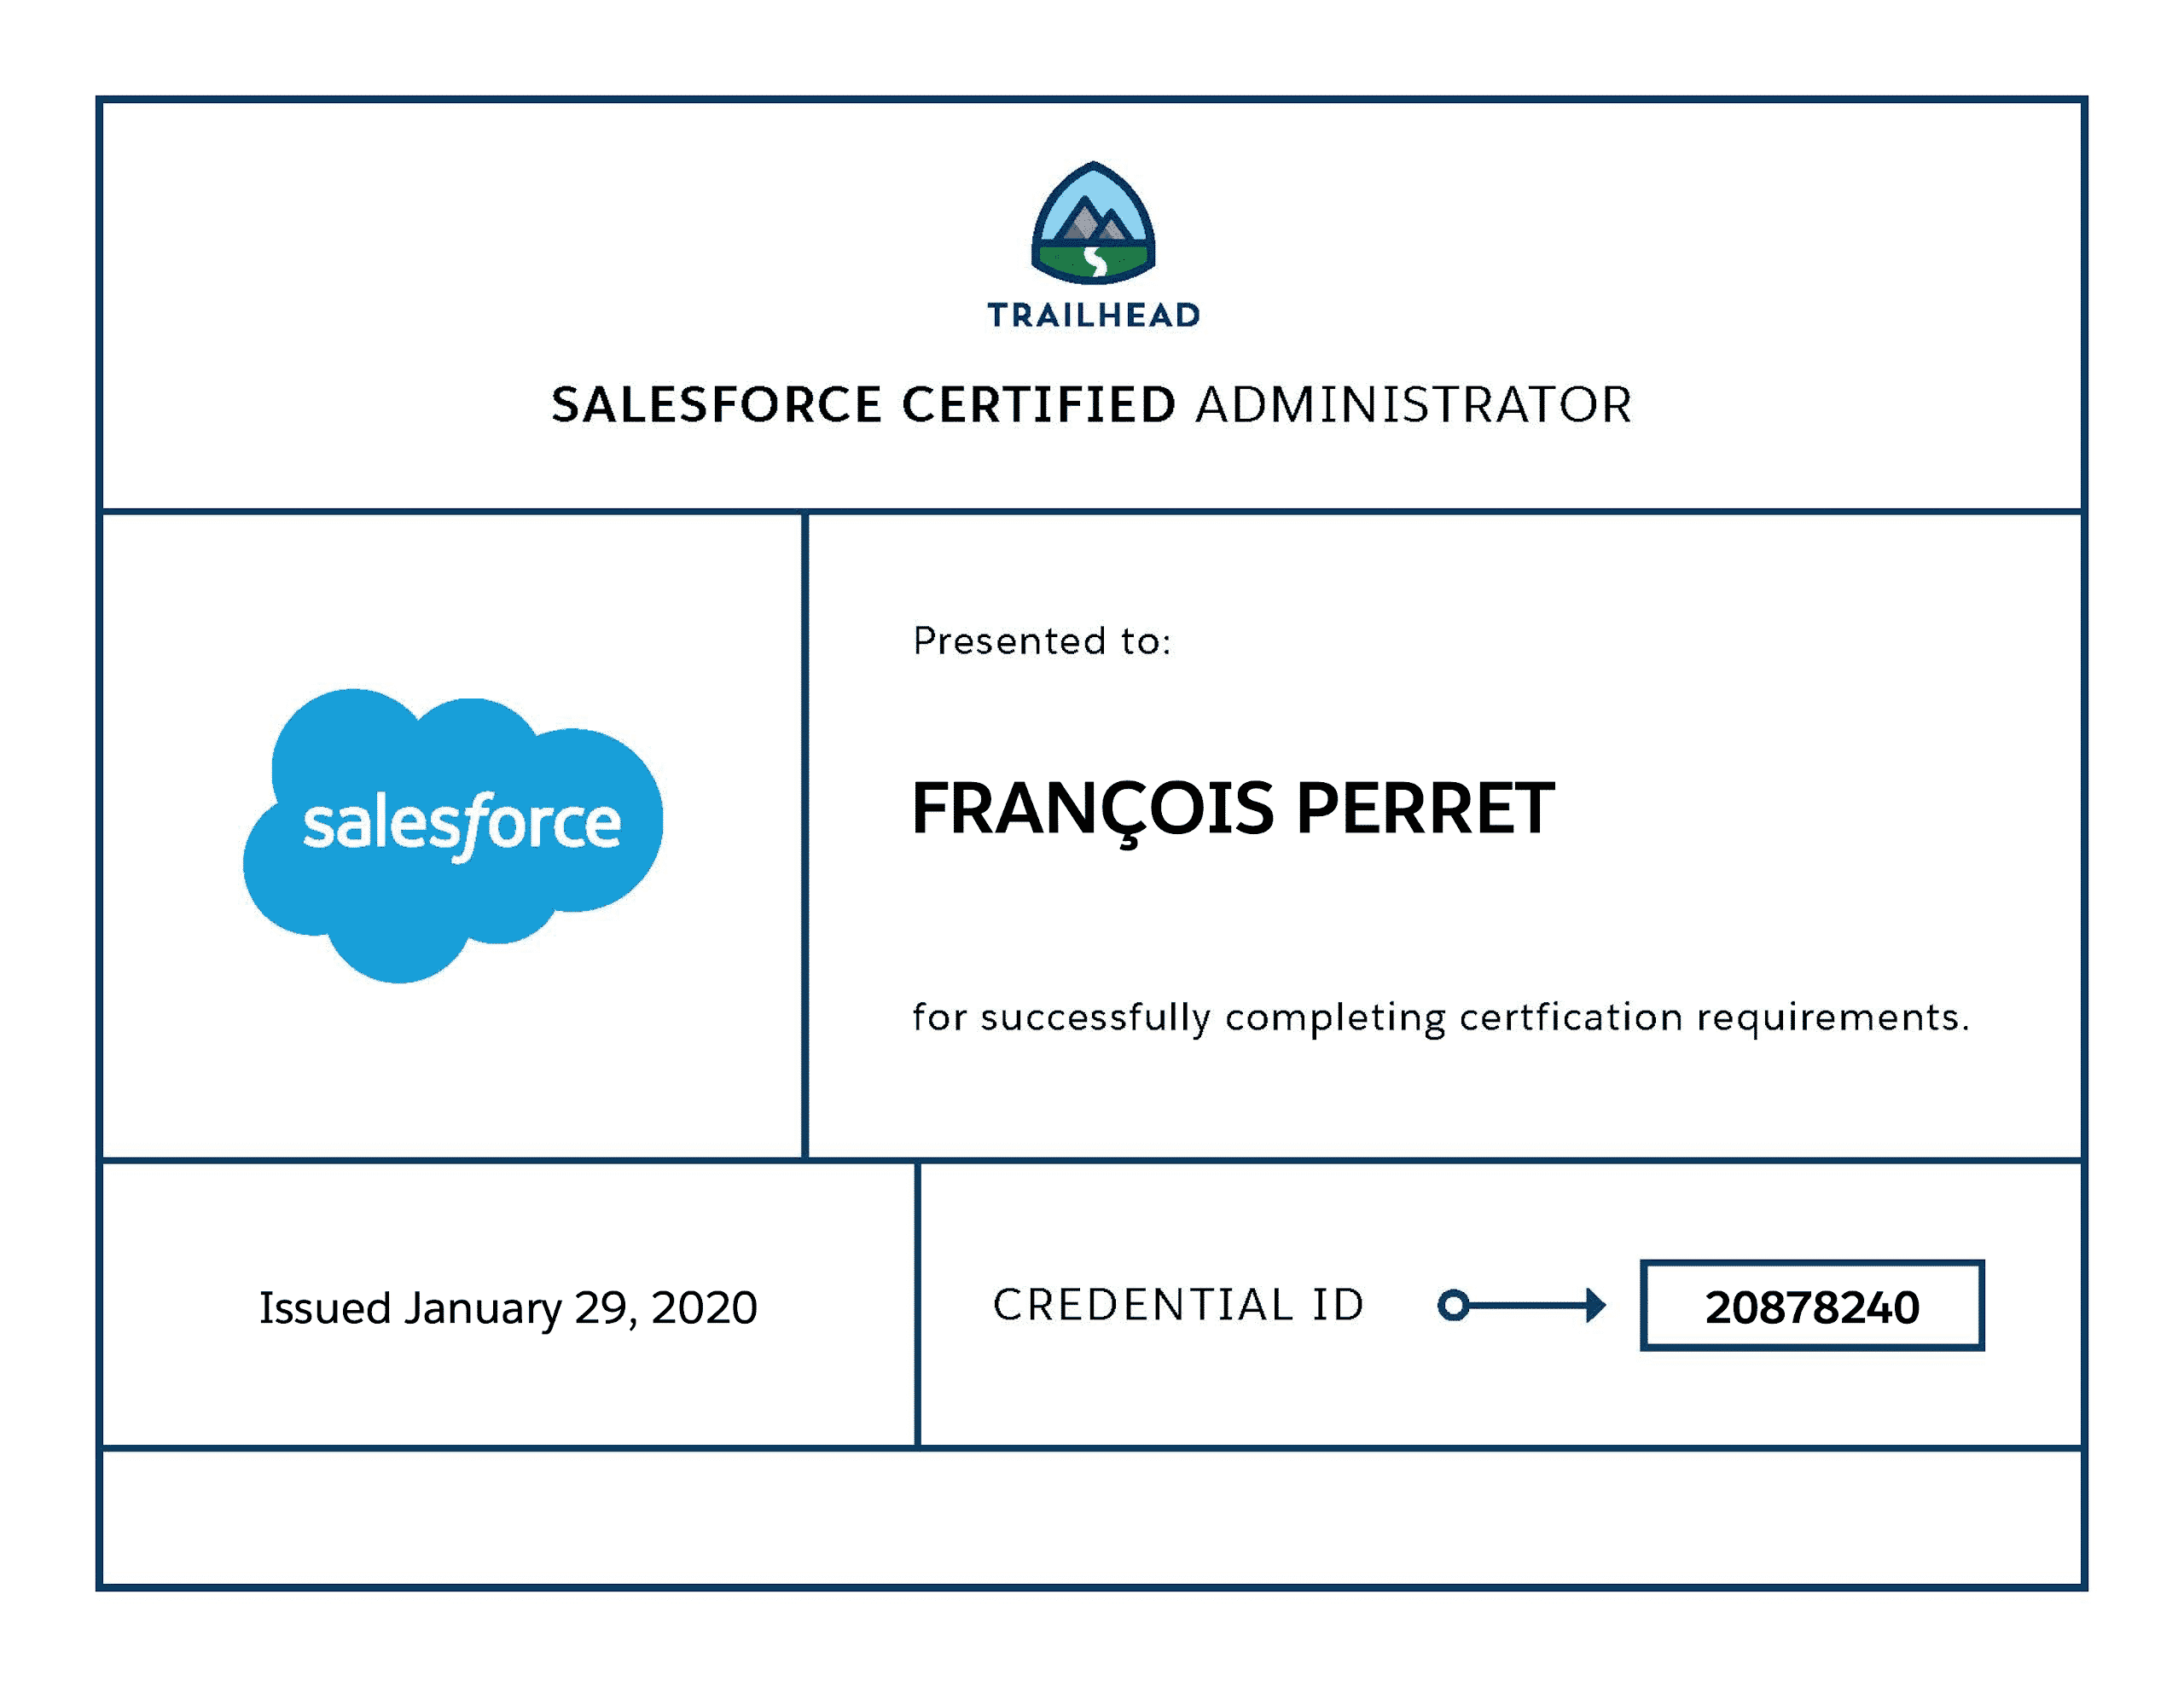 François Perret - Administrateur certifié Salesforce